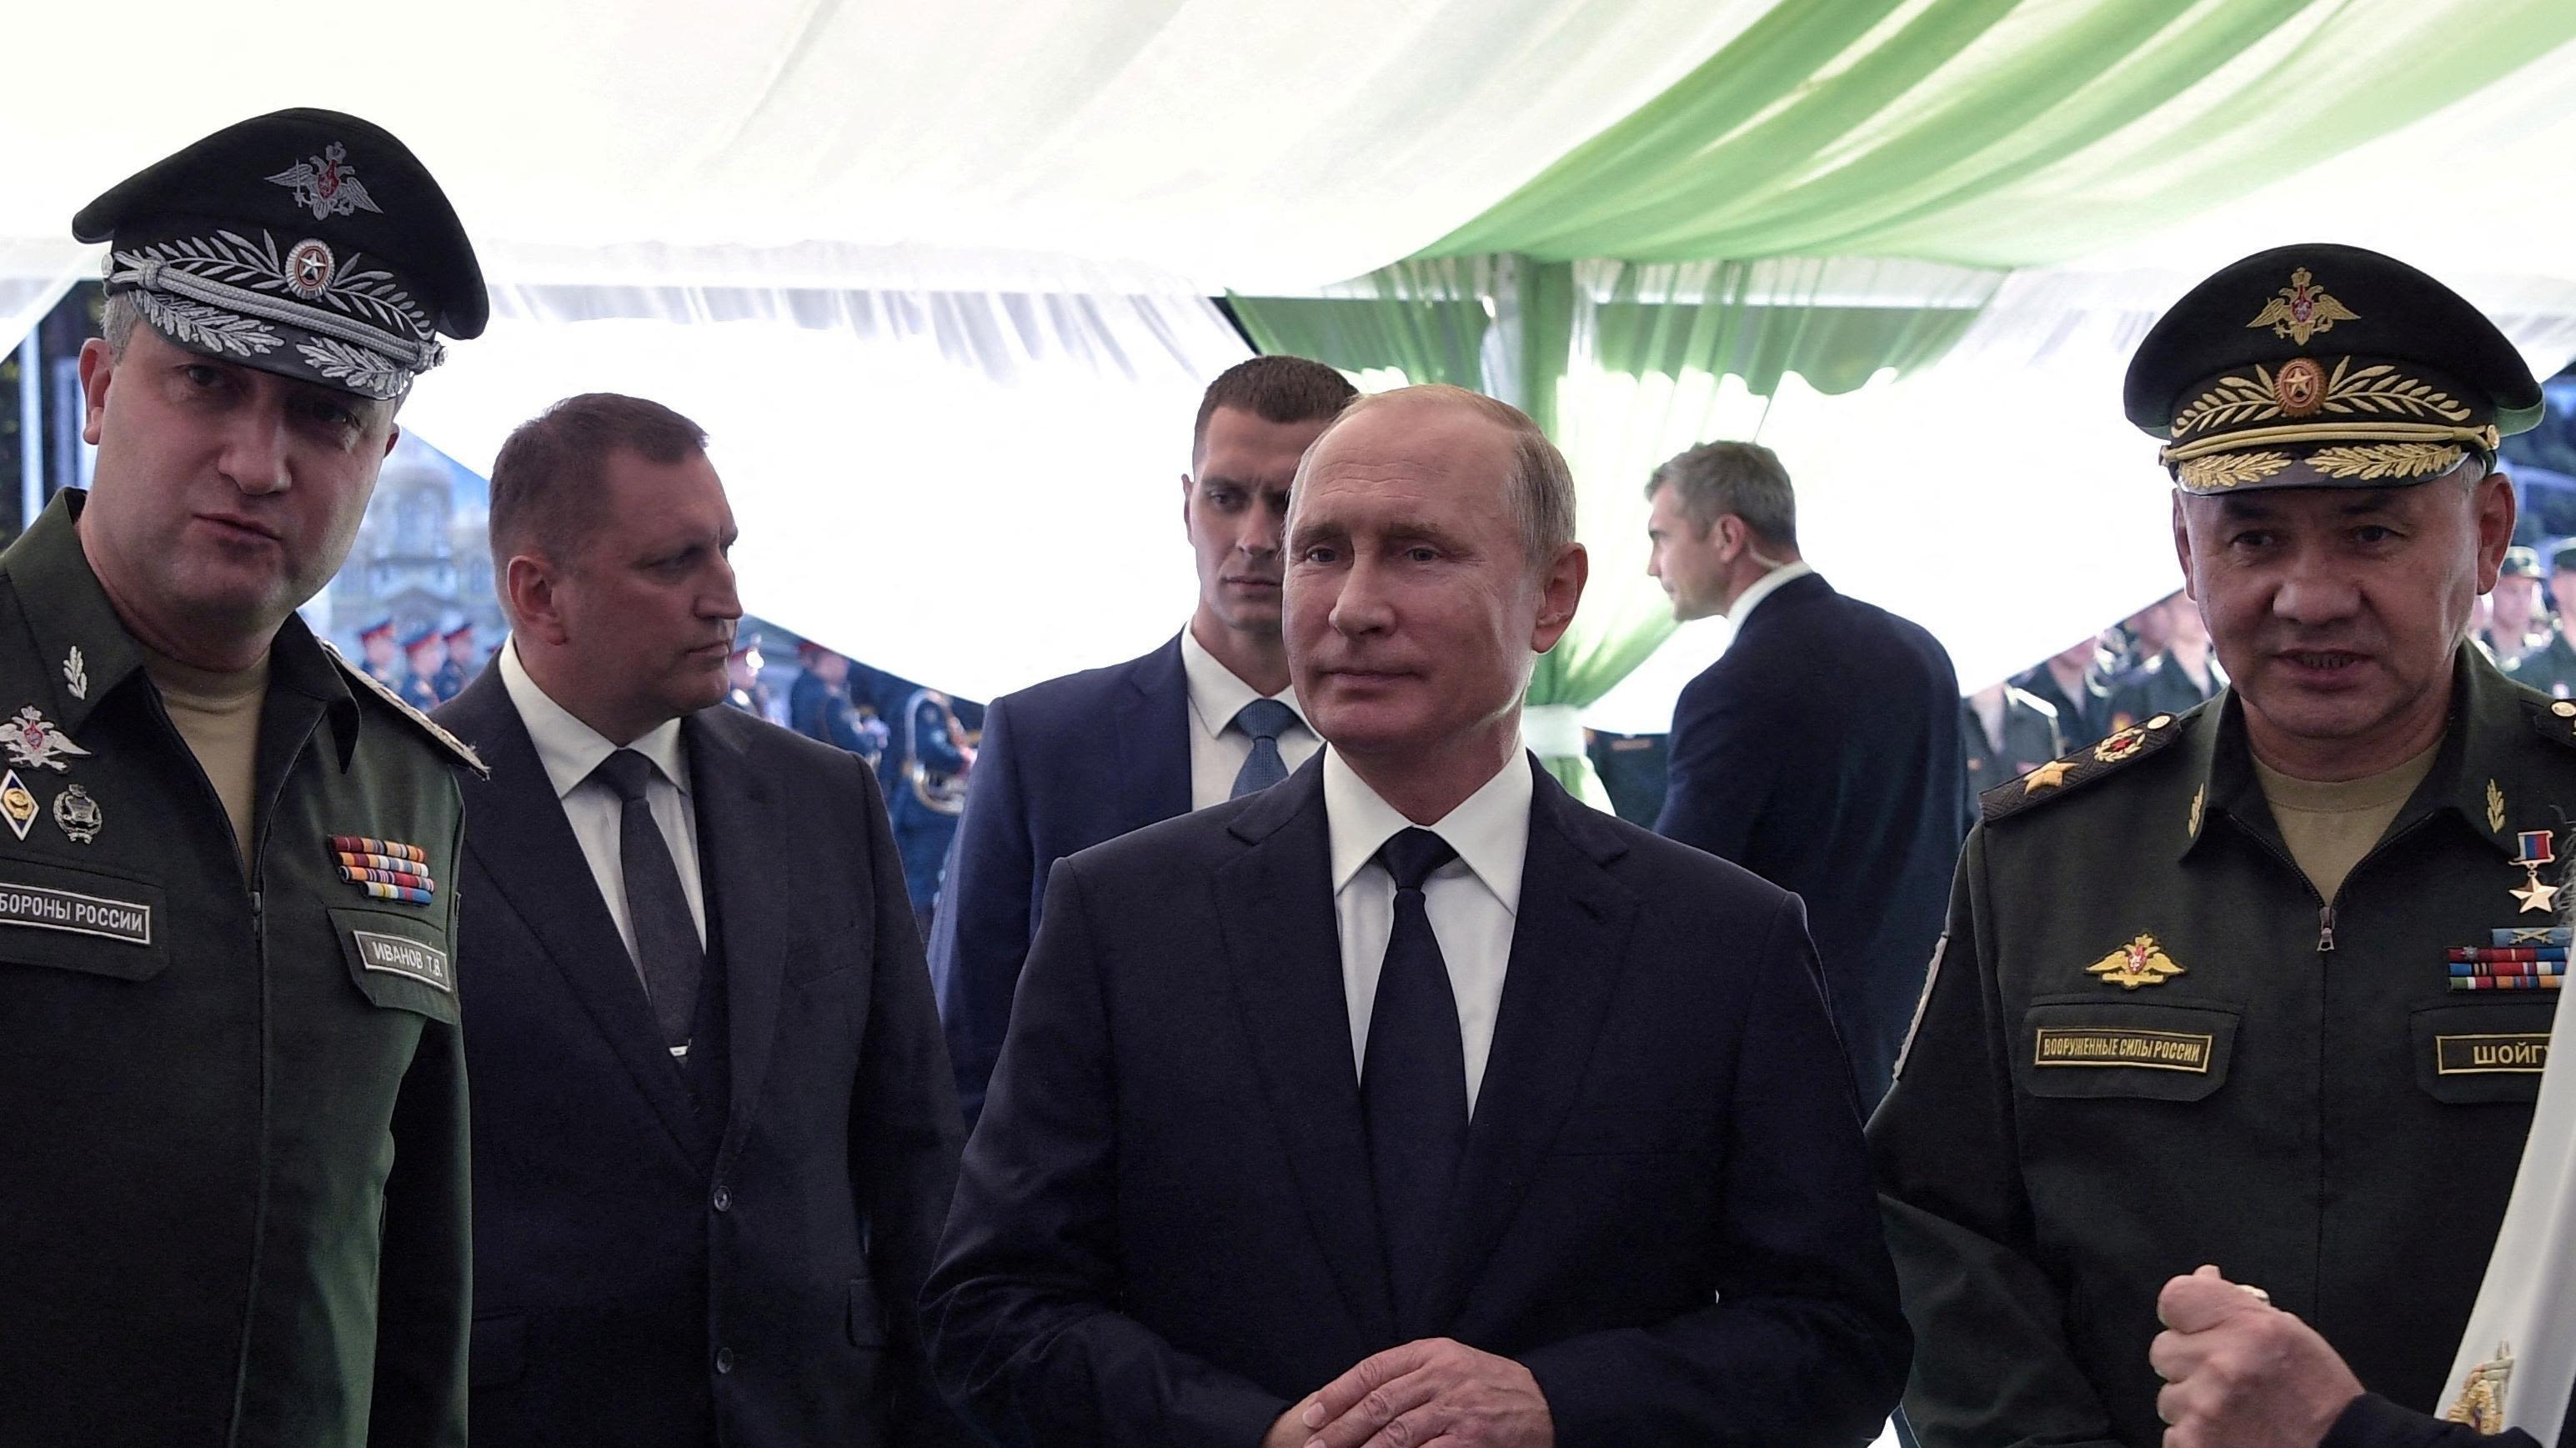 Rosenberg: Putin's military purge echoes Prigozhin's call to act